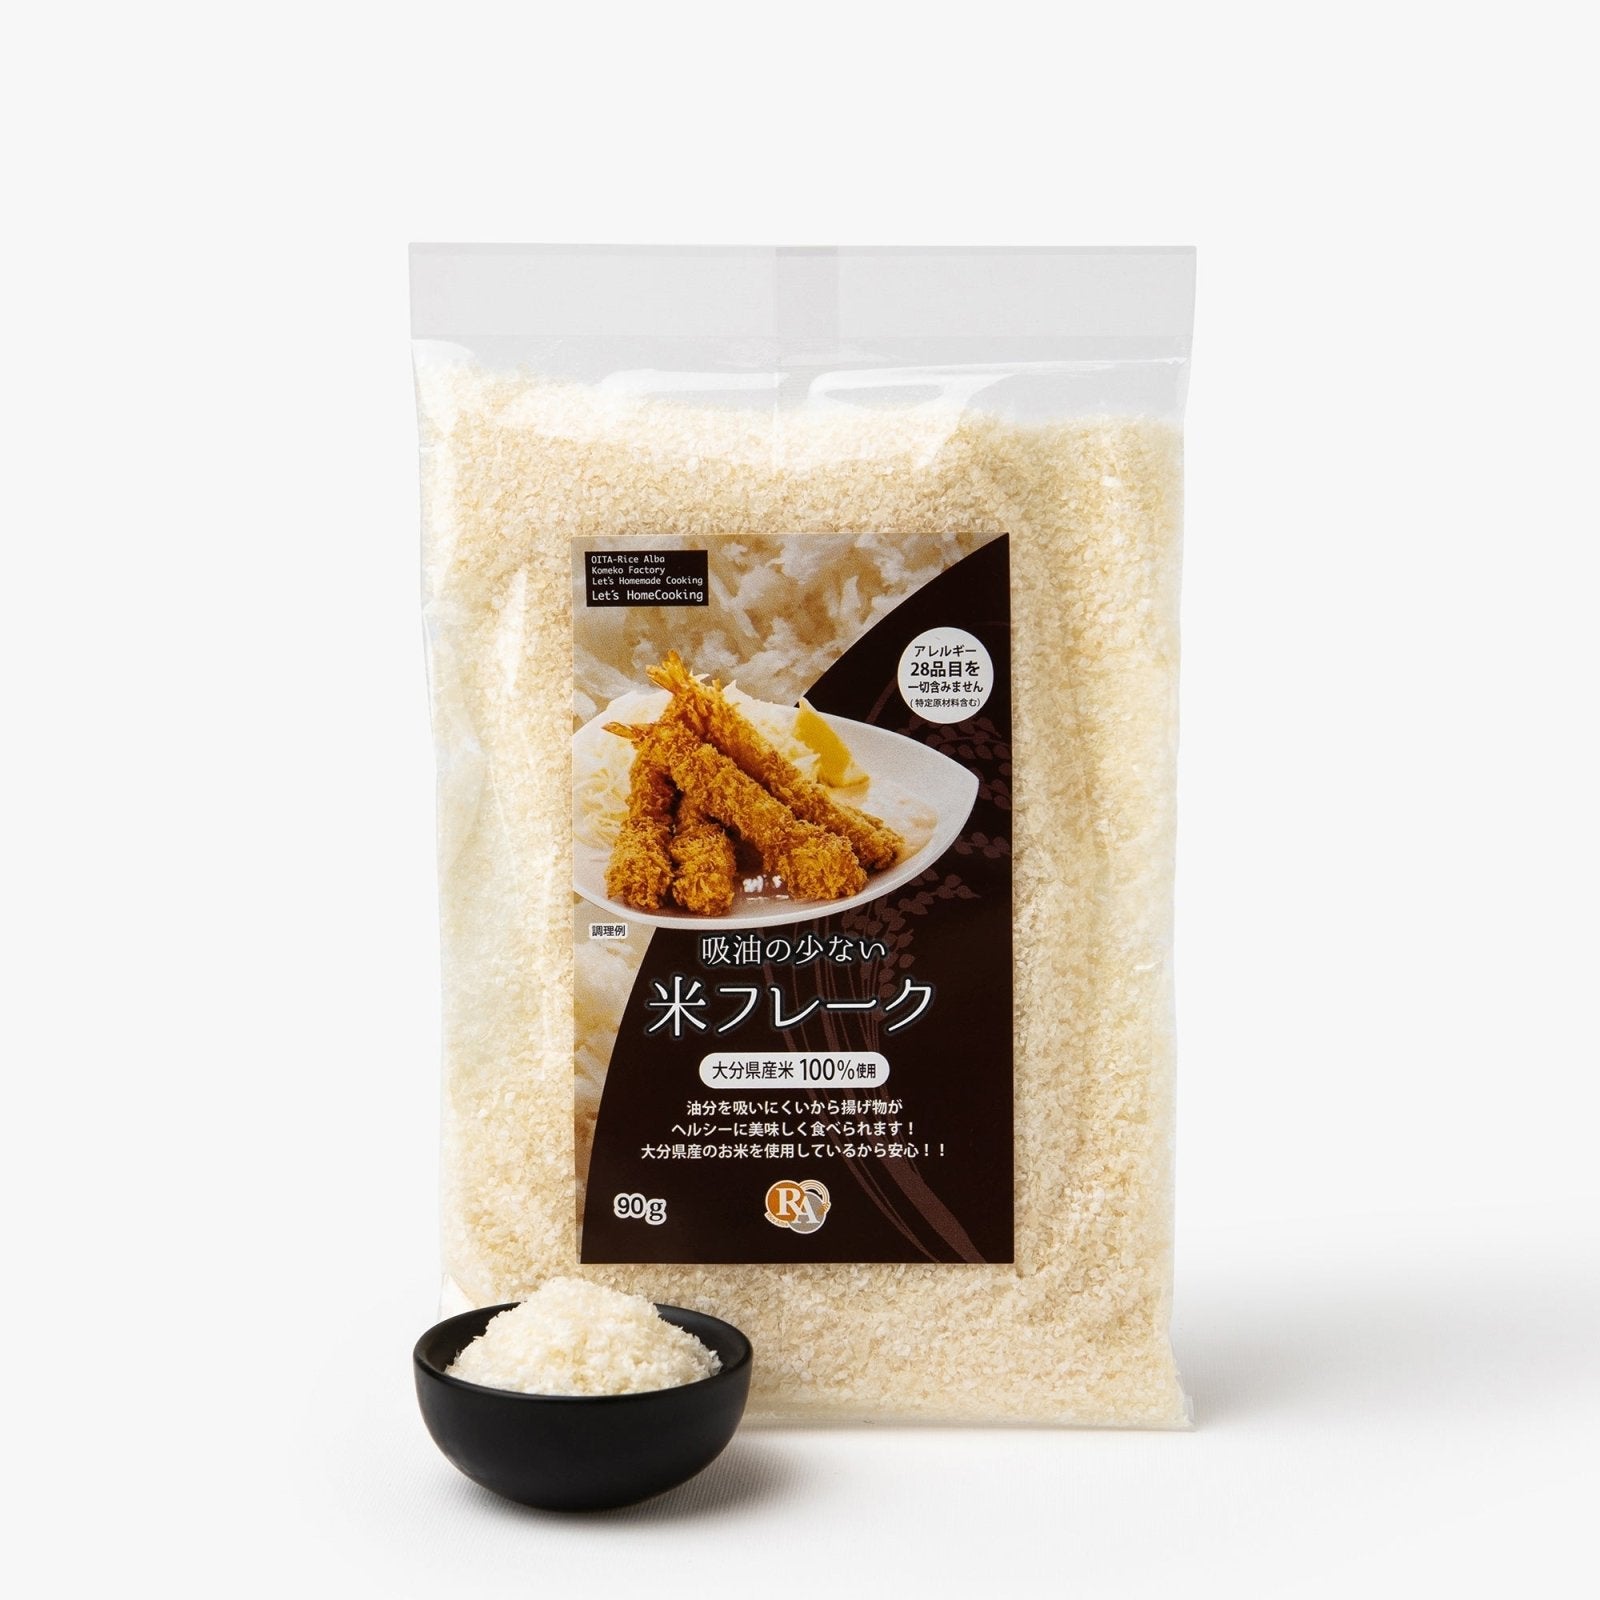 Gluten-free rice crumbs - 90g - Kome panko - iRASSHAi